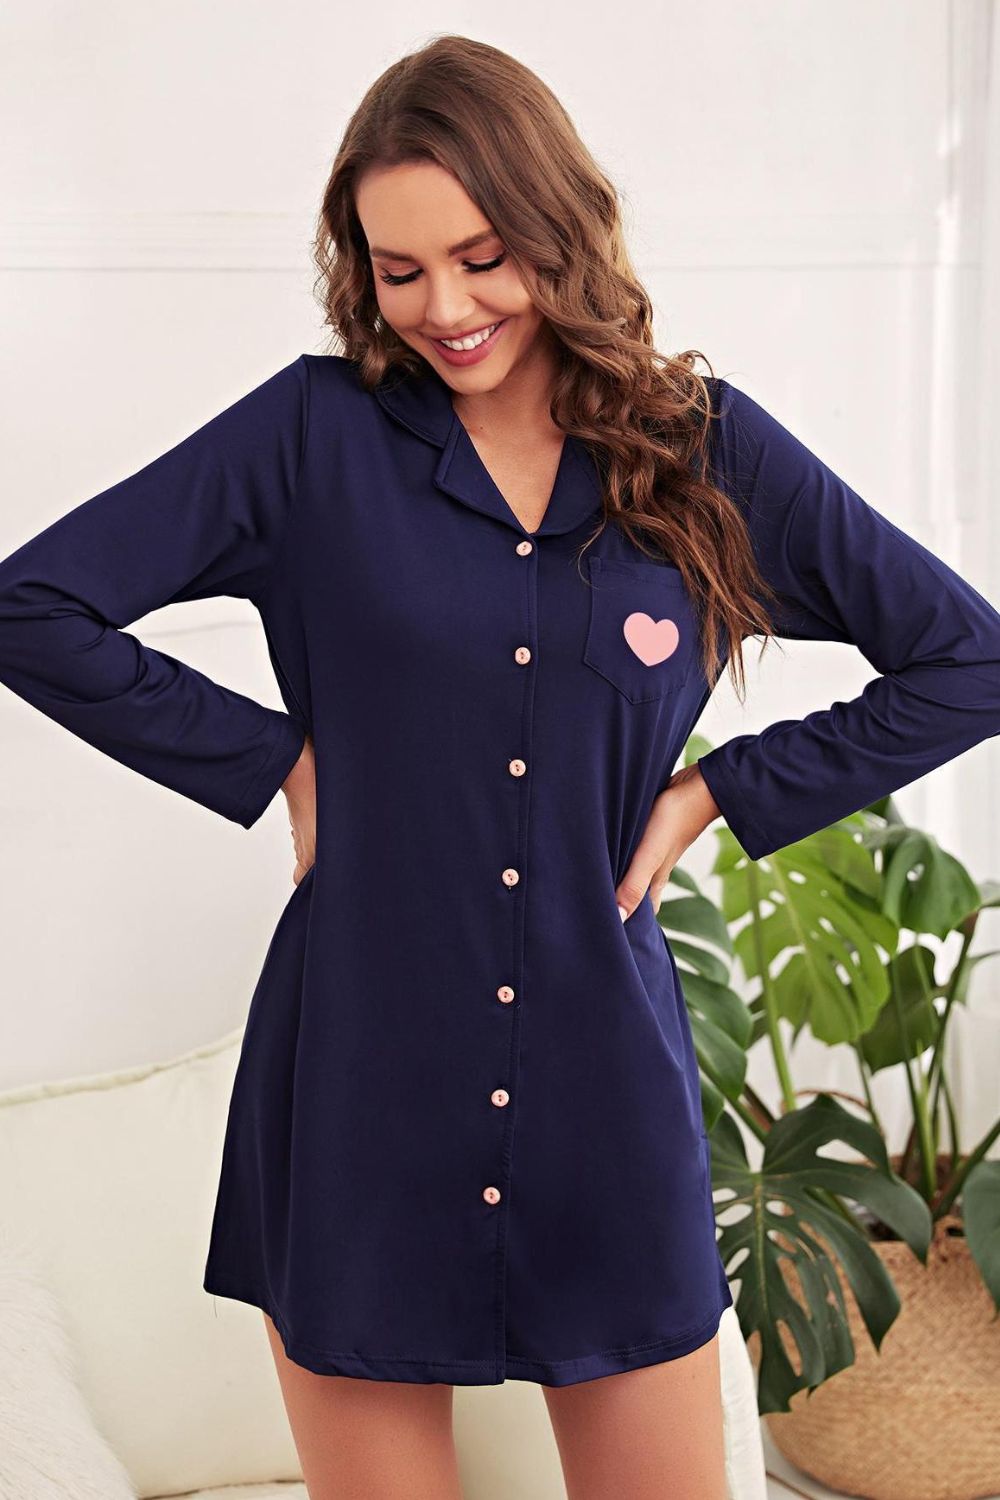 Women’s Heart Graphic Lapel Collar Night Shirt Dress